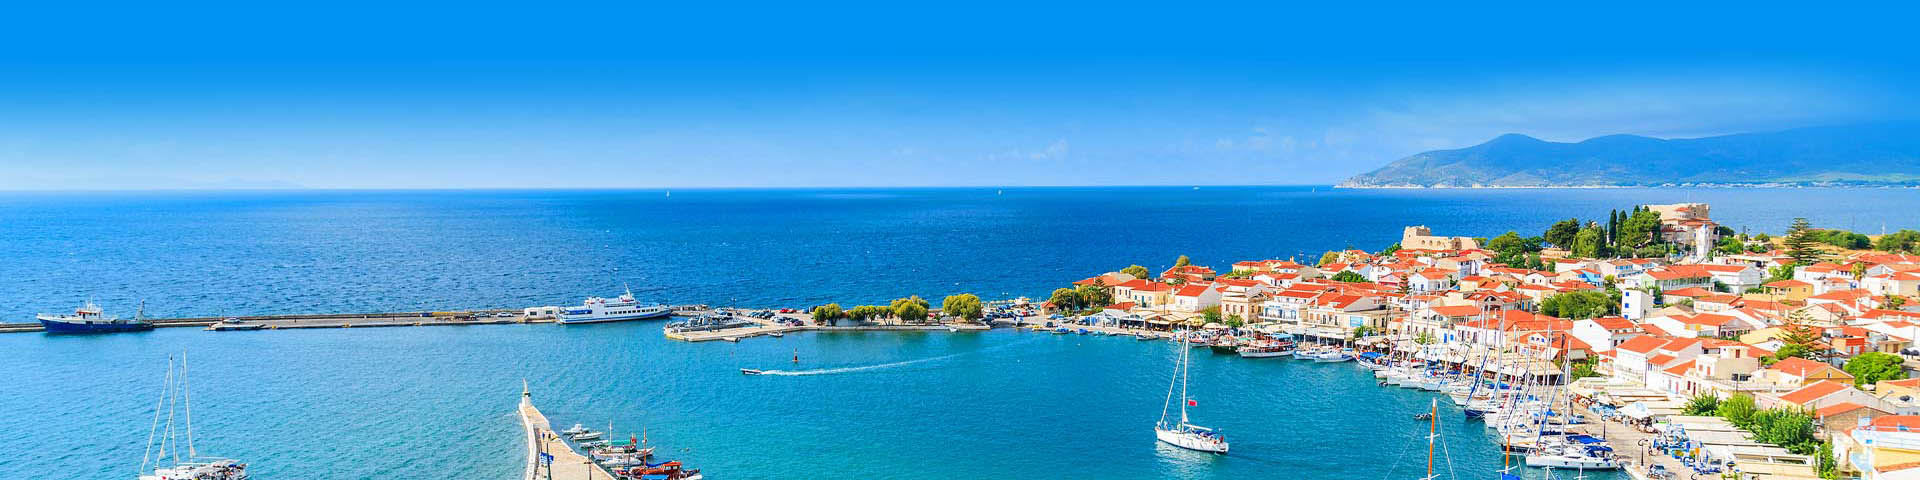 Baai met bootjes omringd door huisjes aan de Egeïsche Kust van Turkije